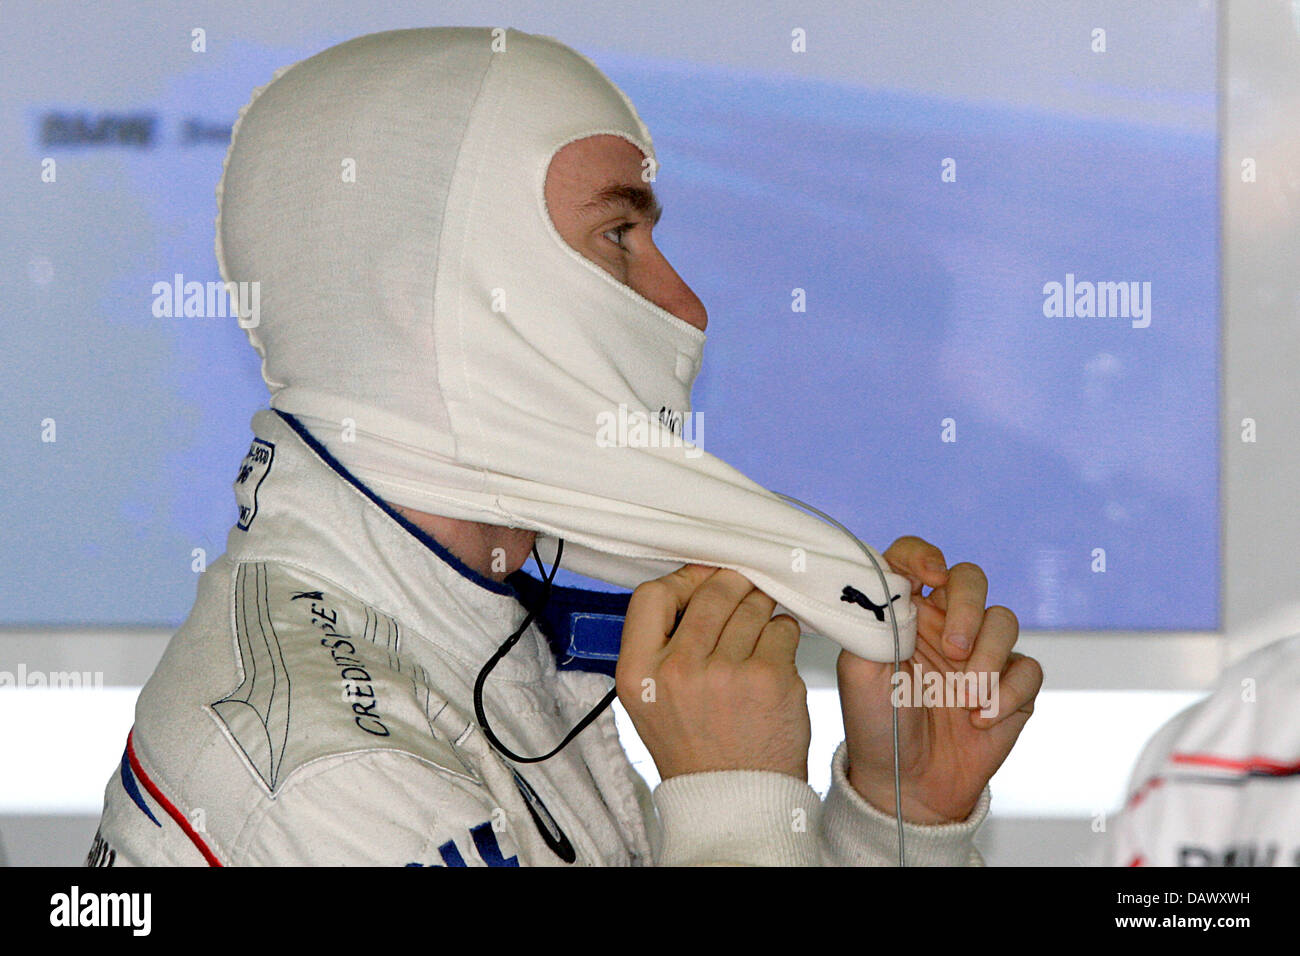 Piloto de Fórmula Uno alemán Nick Heidfeld de BMW Sauber se saca su ropa ignífuga después de la tercera sesión de entrenamientos libres en el circuito de Cataluña, cerca de Barcelona, España, 12 de mayo de 2007. 2007 Gran Premio de Fórmula 1 de España, tiene lugar el 13 de mayo. Fotografía: Jens Buettner Foto de stock